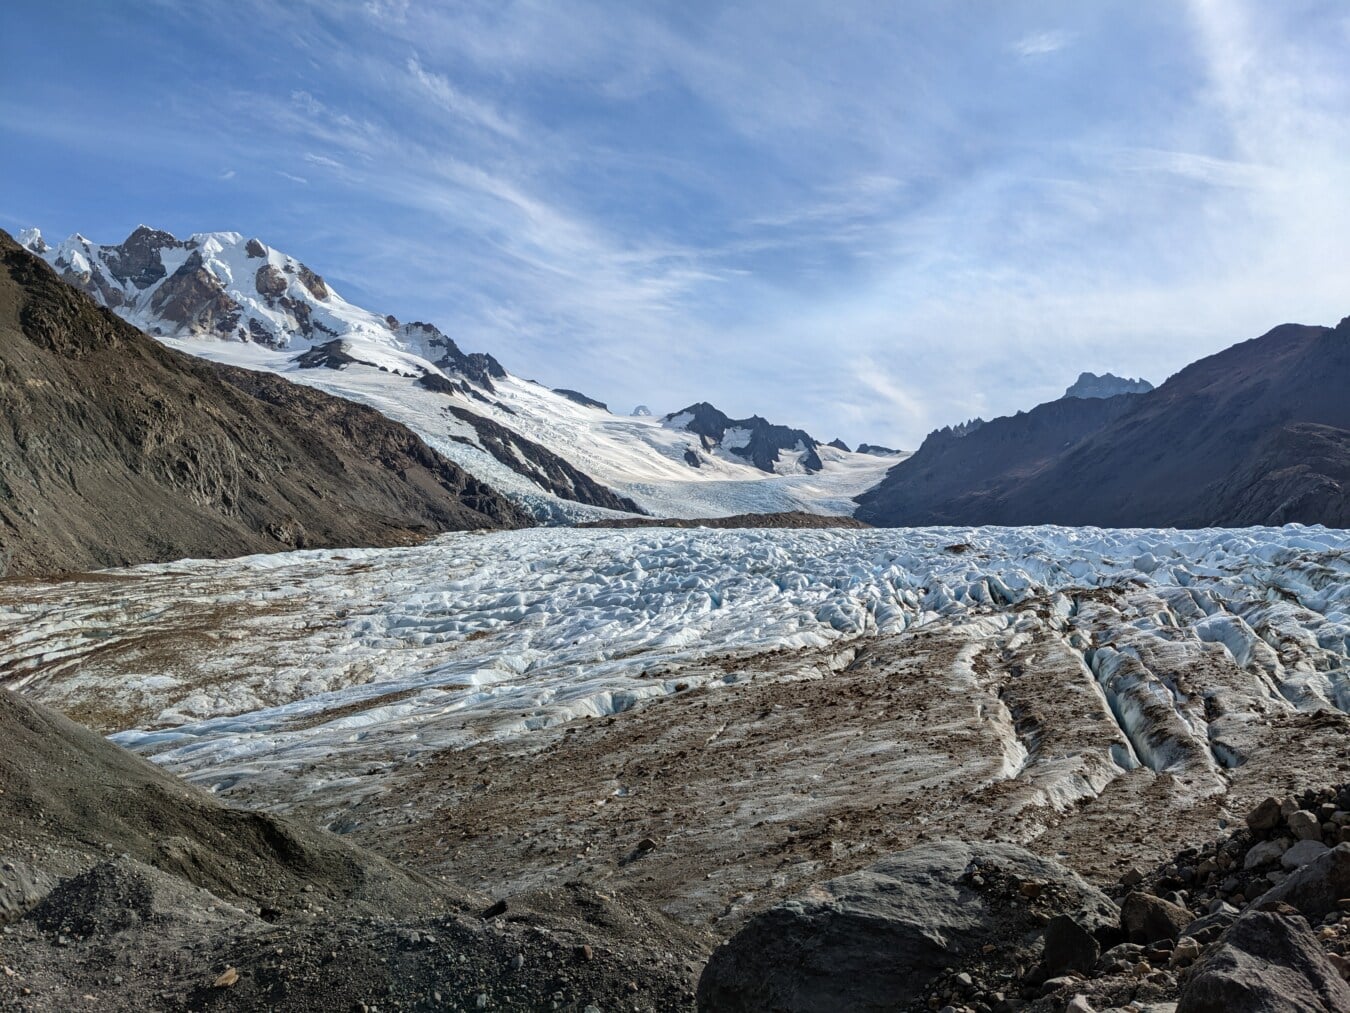 champ de glace, Glacier, congelés, montagnes, ciel bleu, glace, paysage, neige, montagne, eau